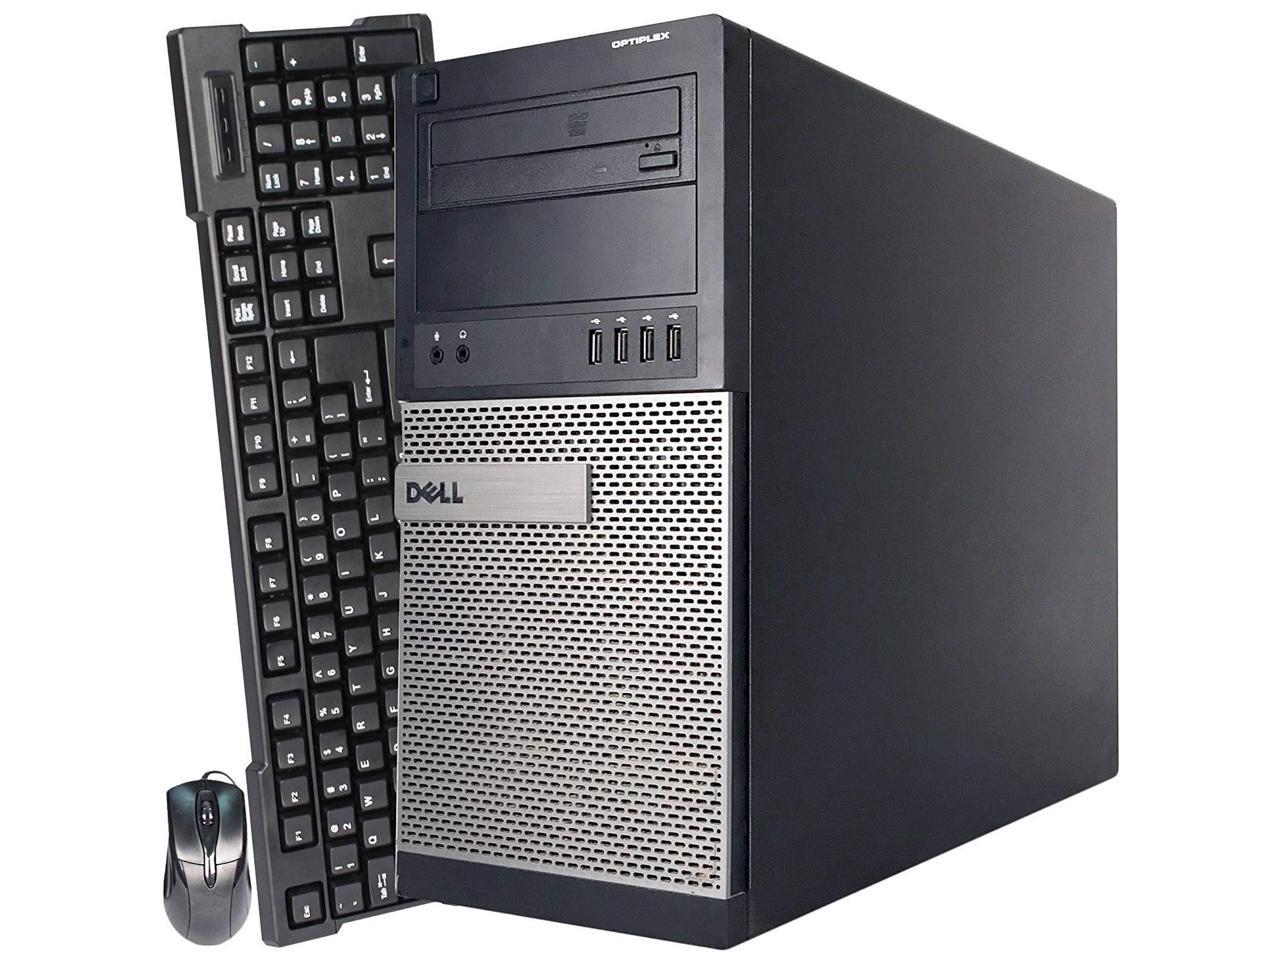 Dell OptiPlex 790 Tower Computer PC, 3.40 GHz Intel i7 Quad Core Gen 2, 16GB DDR3 RAM, 250GB Hard Disk Drive (HDD) SATA Hard Drive, Windows 10 Professional 64bit